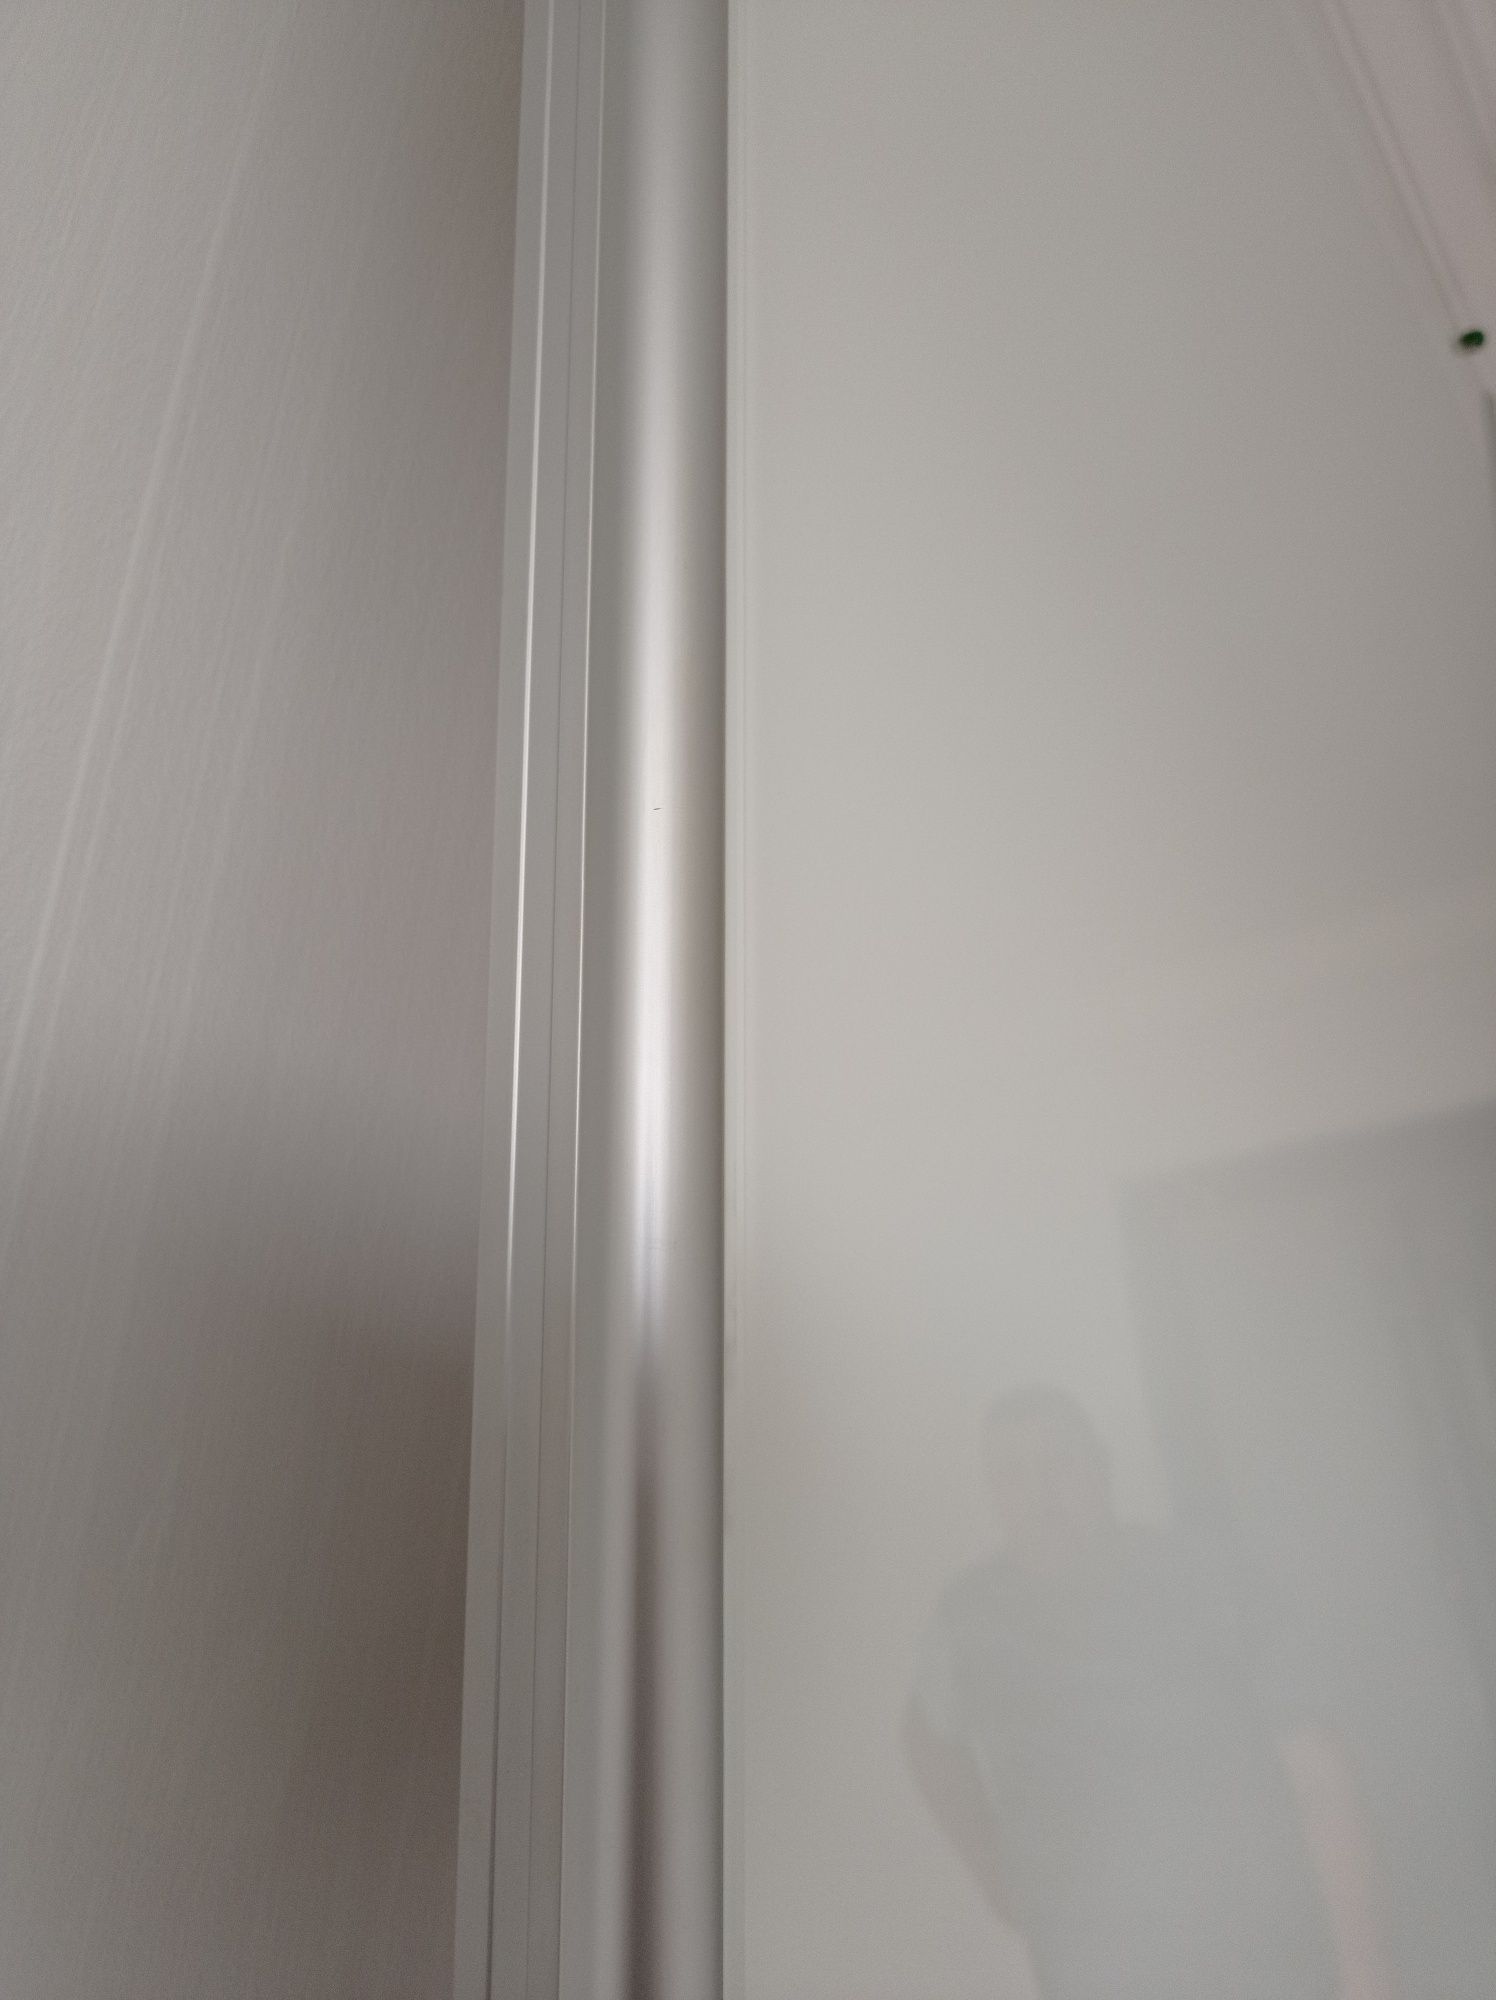 Drzwi przesuwne do szafy w zabudowie białe szafa duże